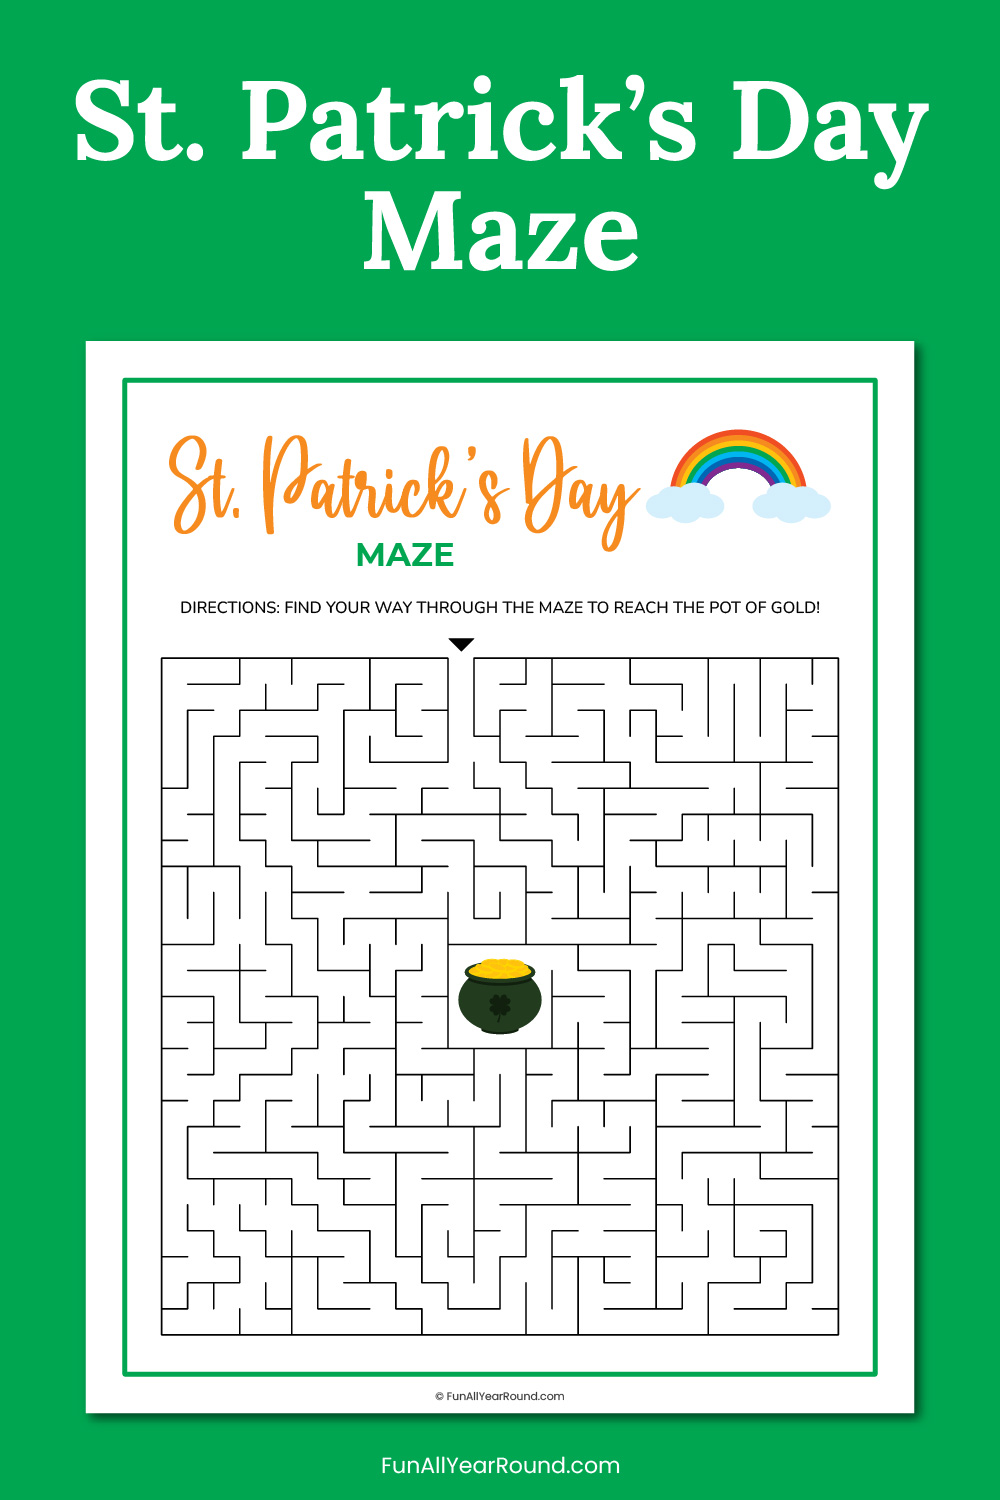 St. Patrick's Day maze